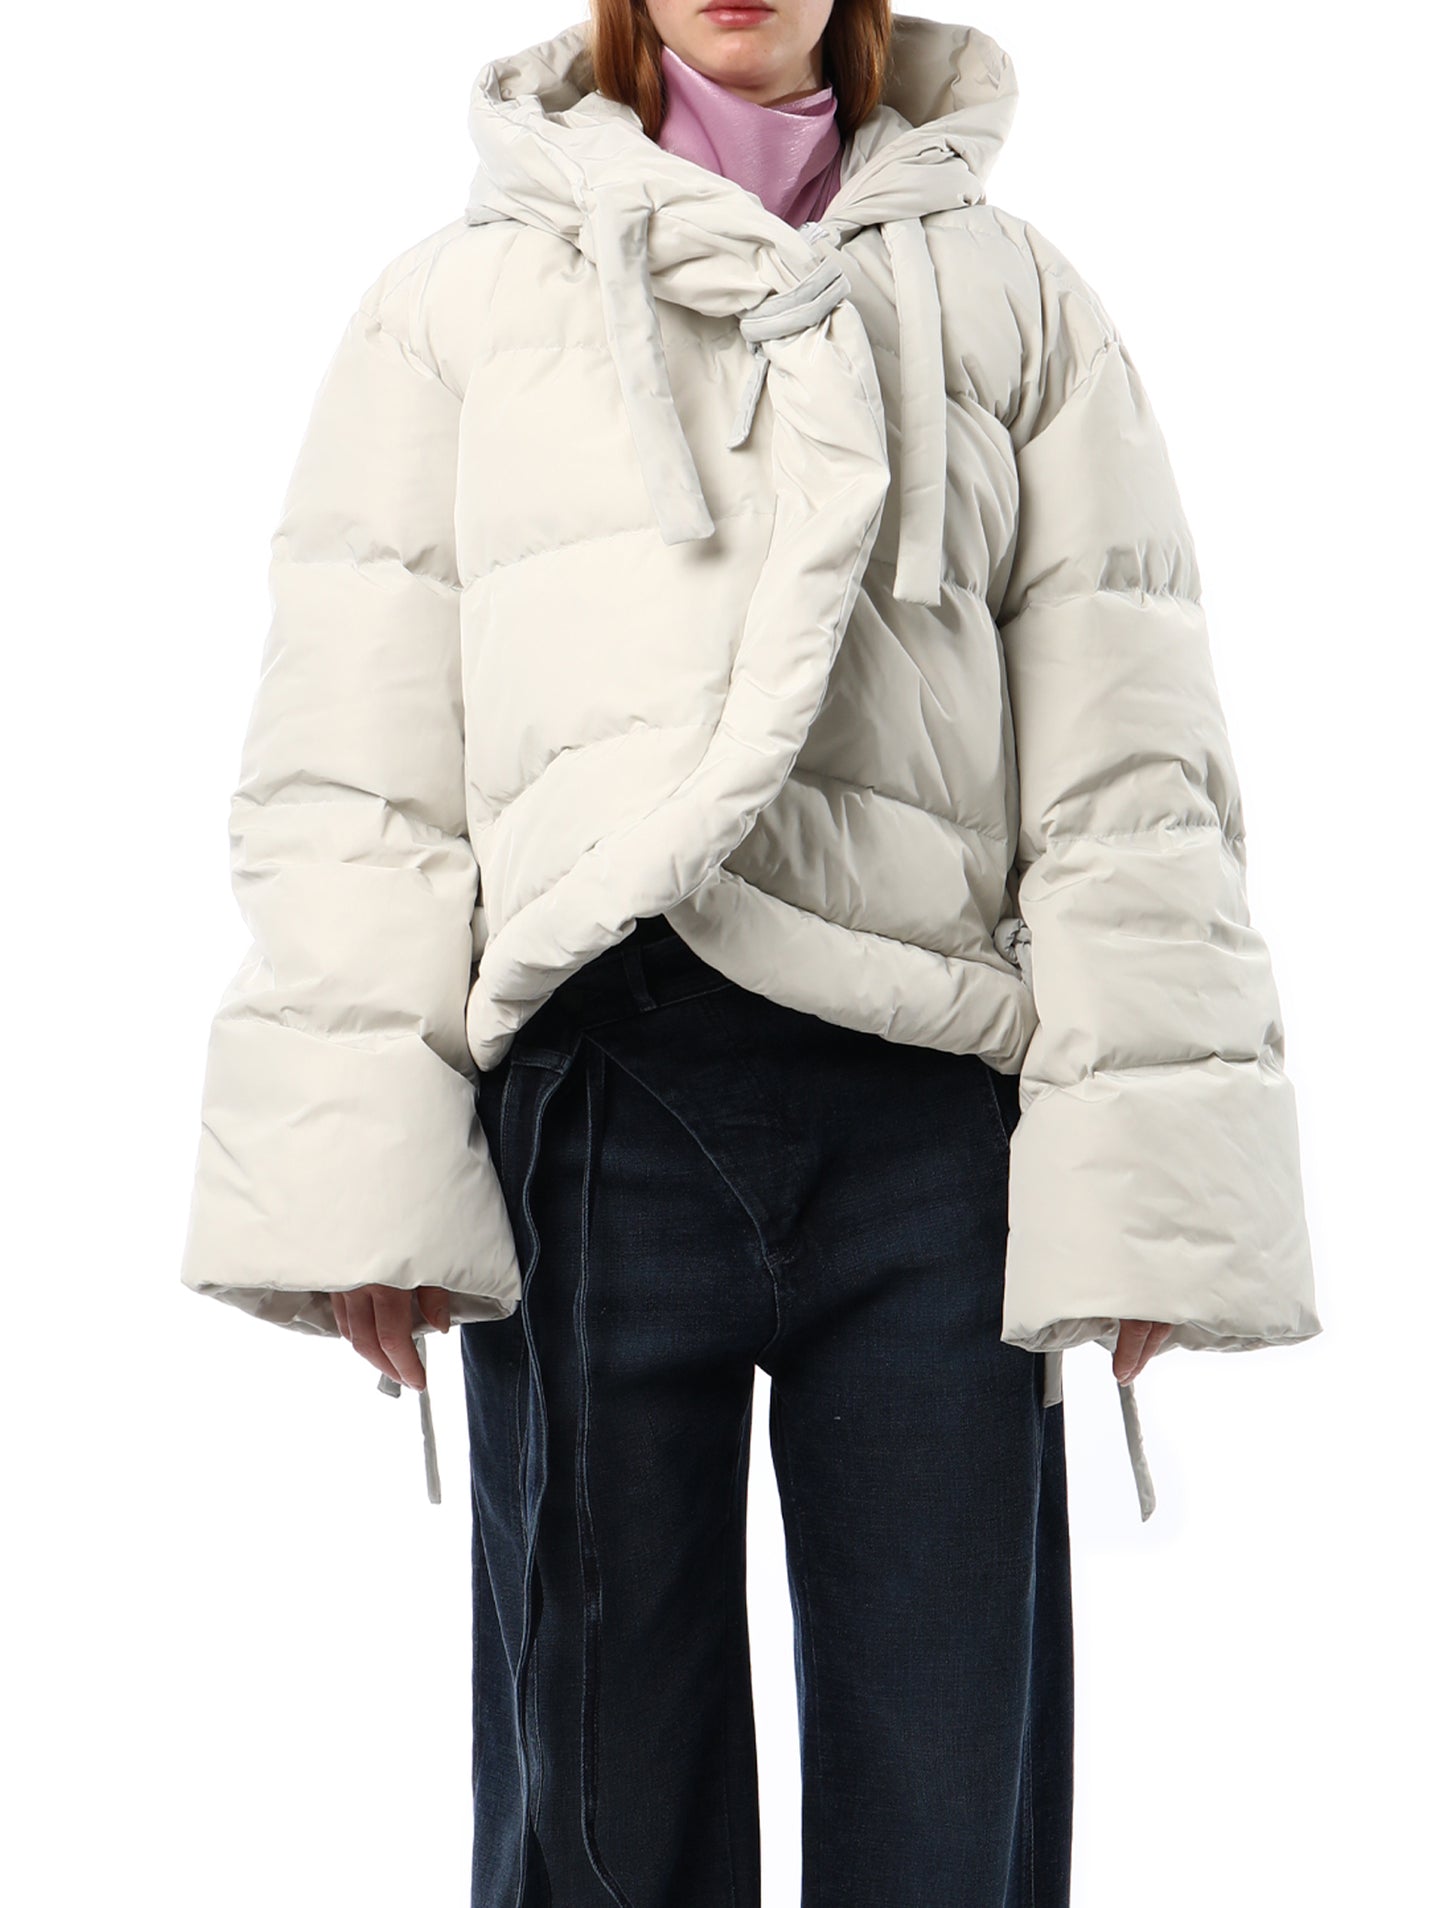 Ottolinger White Puffer Jacket